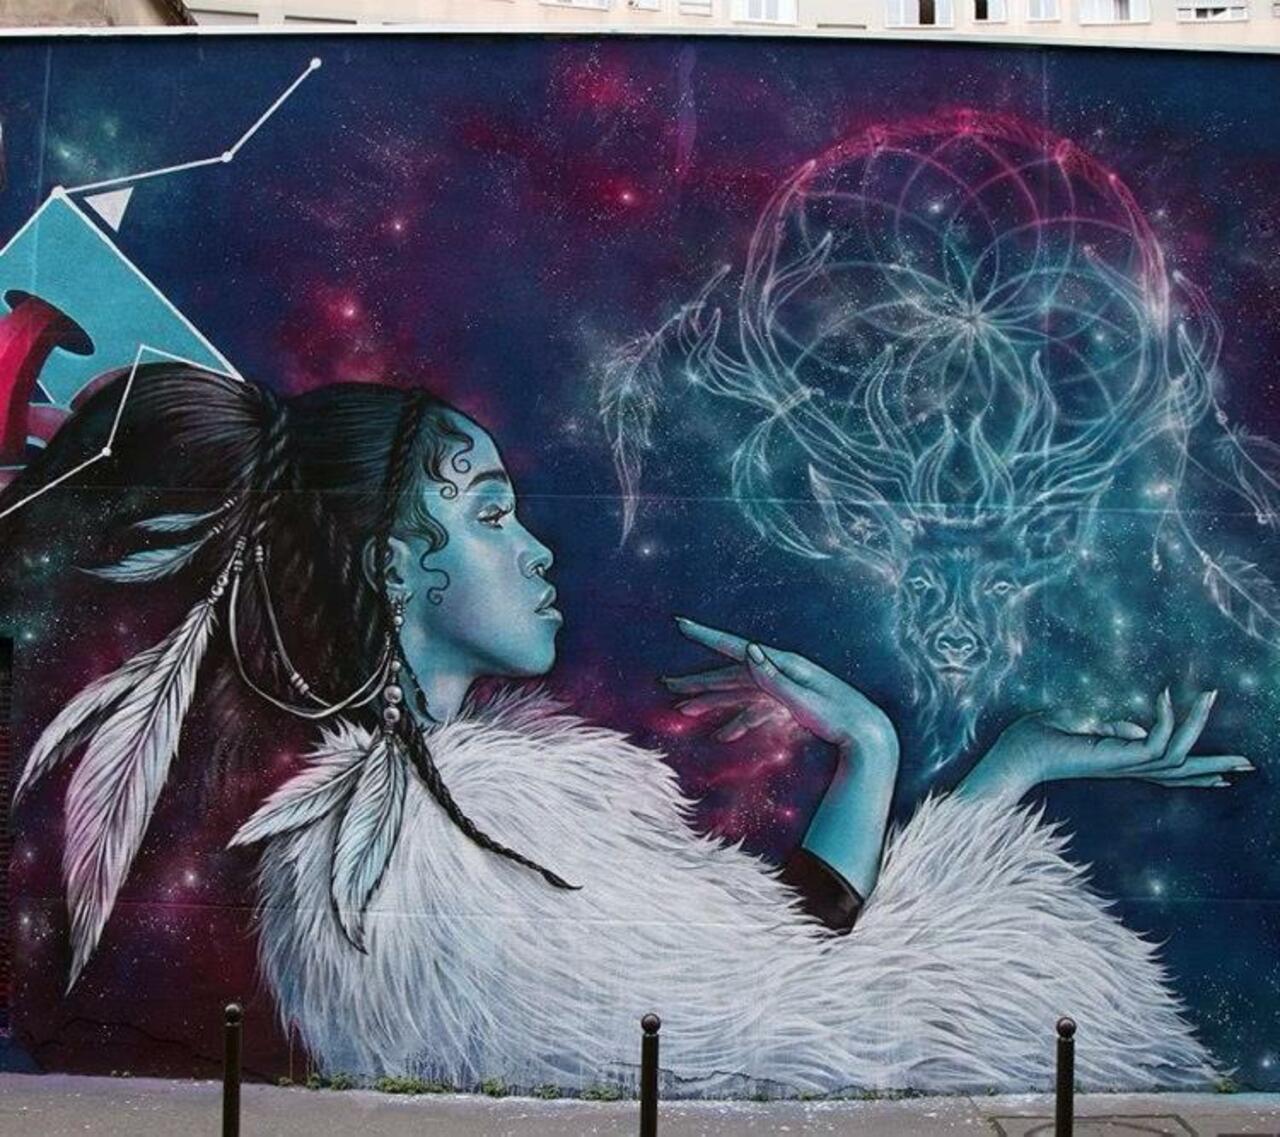 https://goo.gl/7kifqw Artist Alex new Street Art mural located in Paris, France #art #mural #graffiti #streetart http://t.co/uZQm9DKrl1